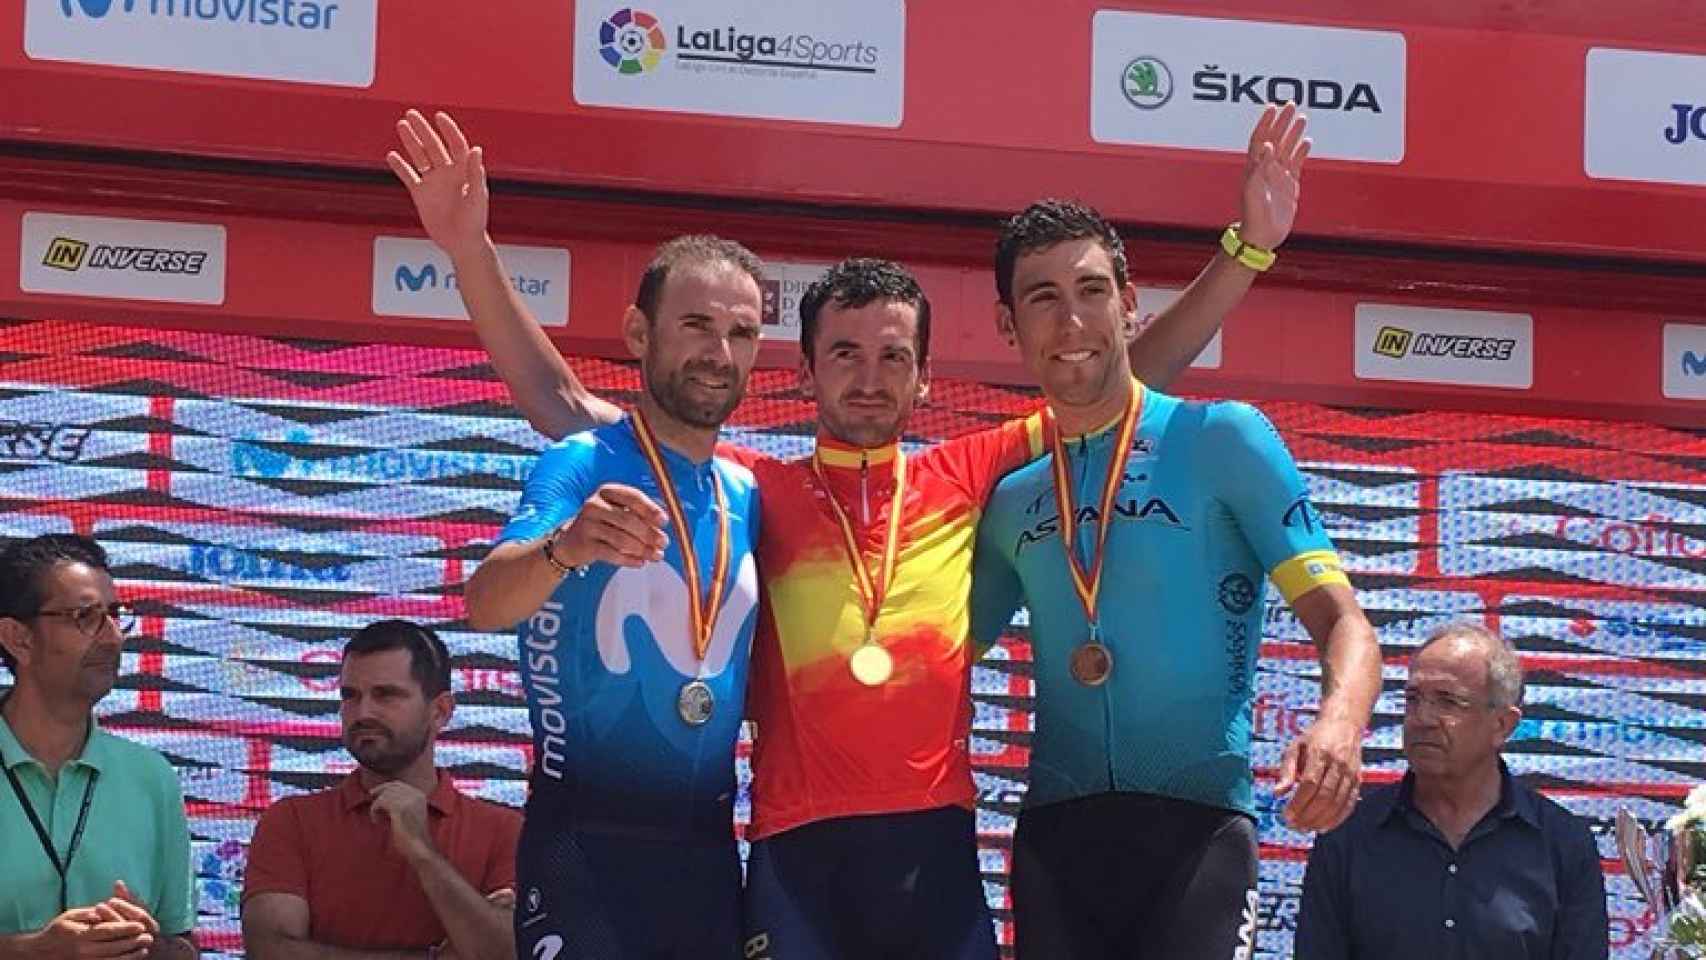 El podio lo completaron Valverde (2º) y Fraile (3º).